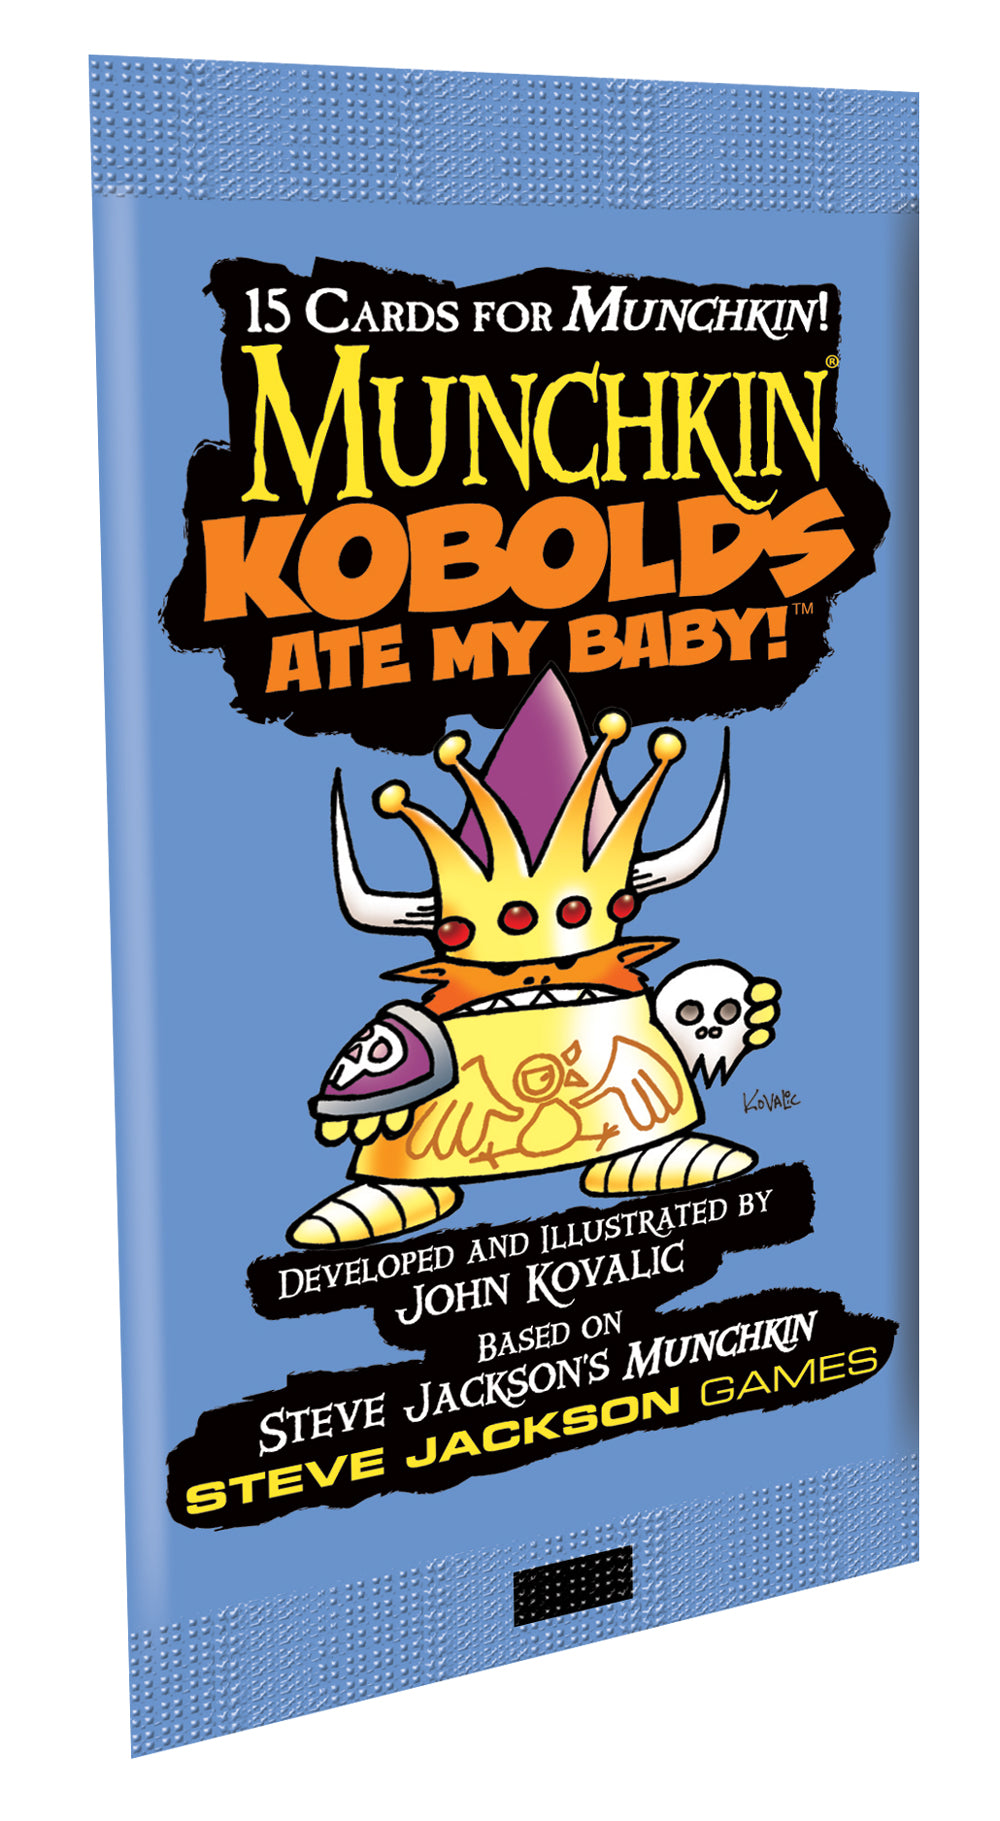 Munchkin Kobolds Ate My Baby!